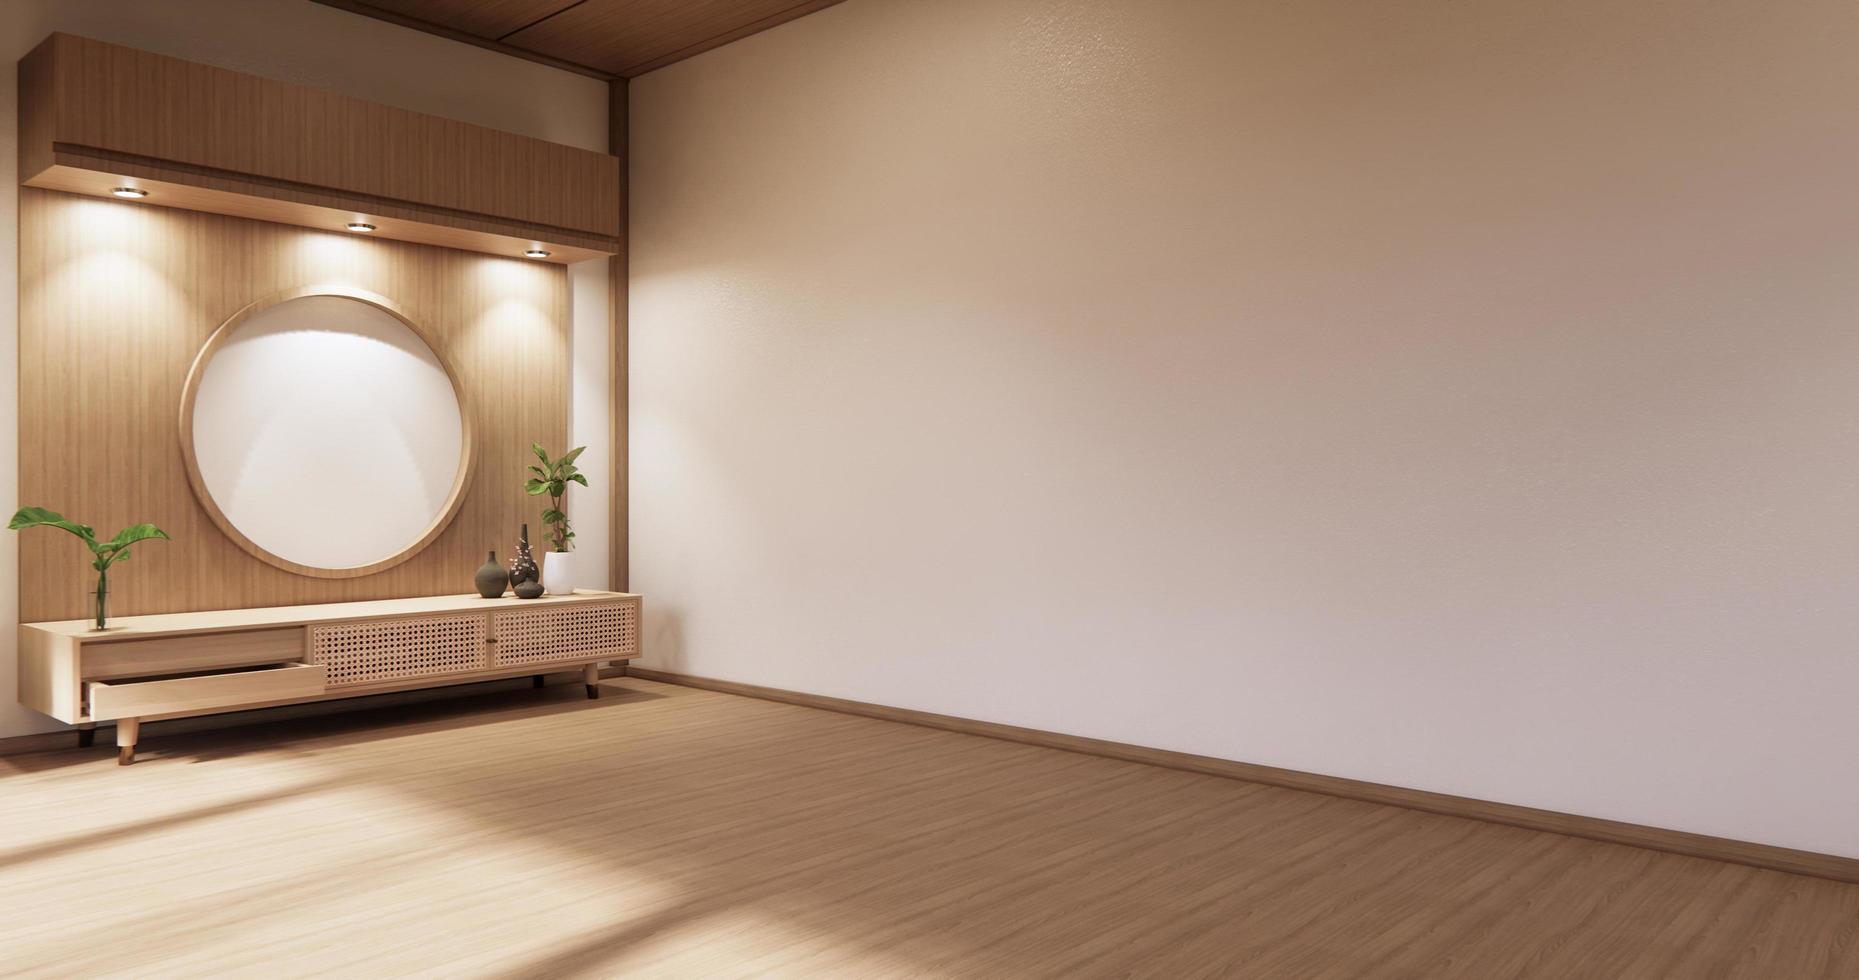 armário de madeira na sala vazia moderna e parede branca em estilo japonês de sala de piso branco. Renderização 3d foto